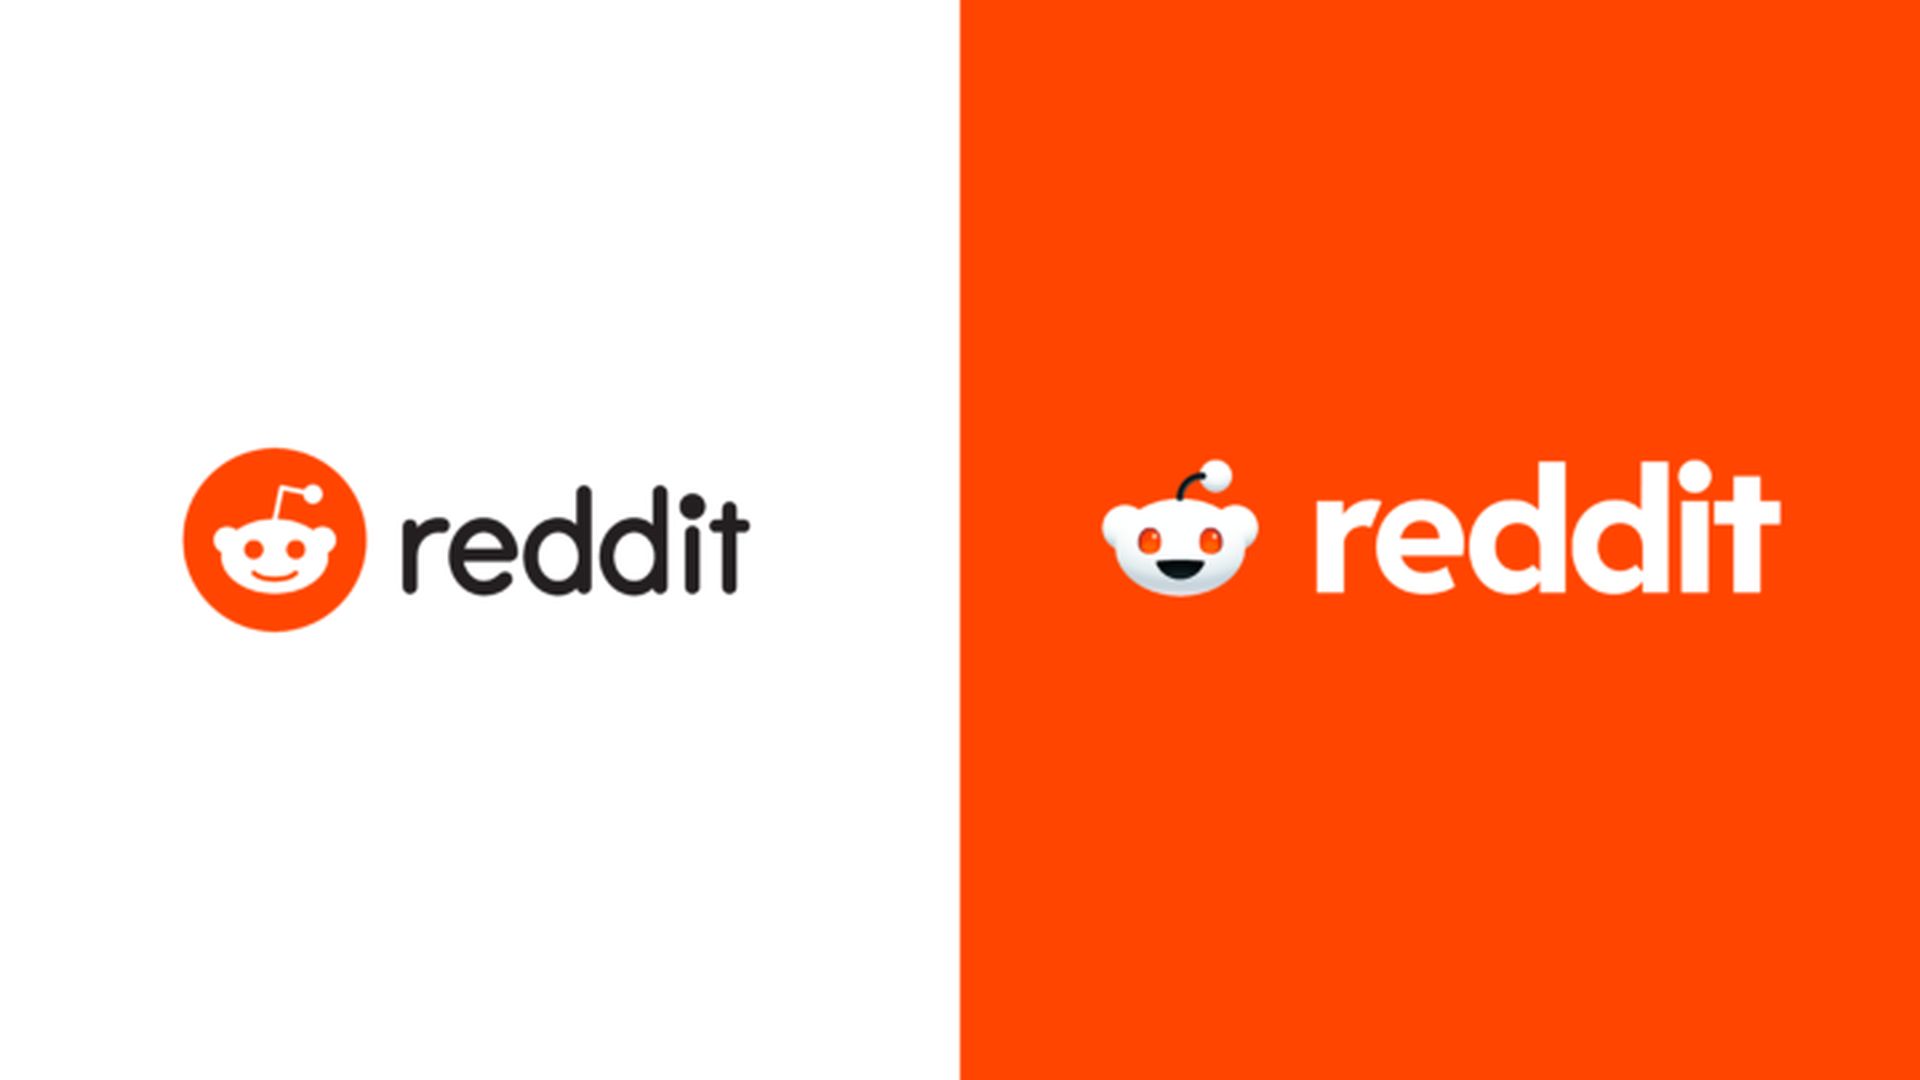 Reddit представил новый фирменный стиль